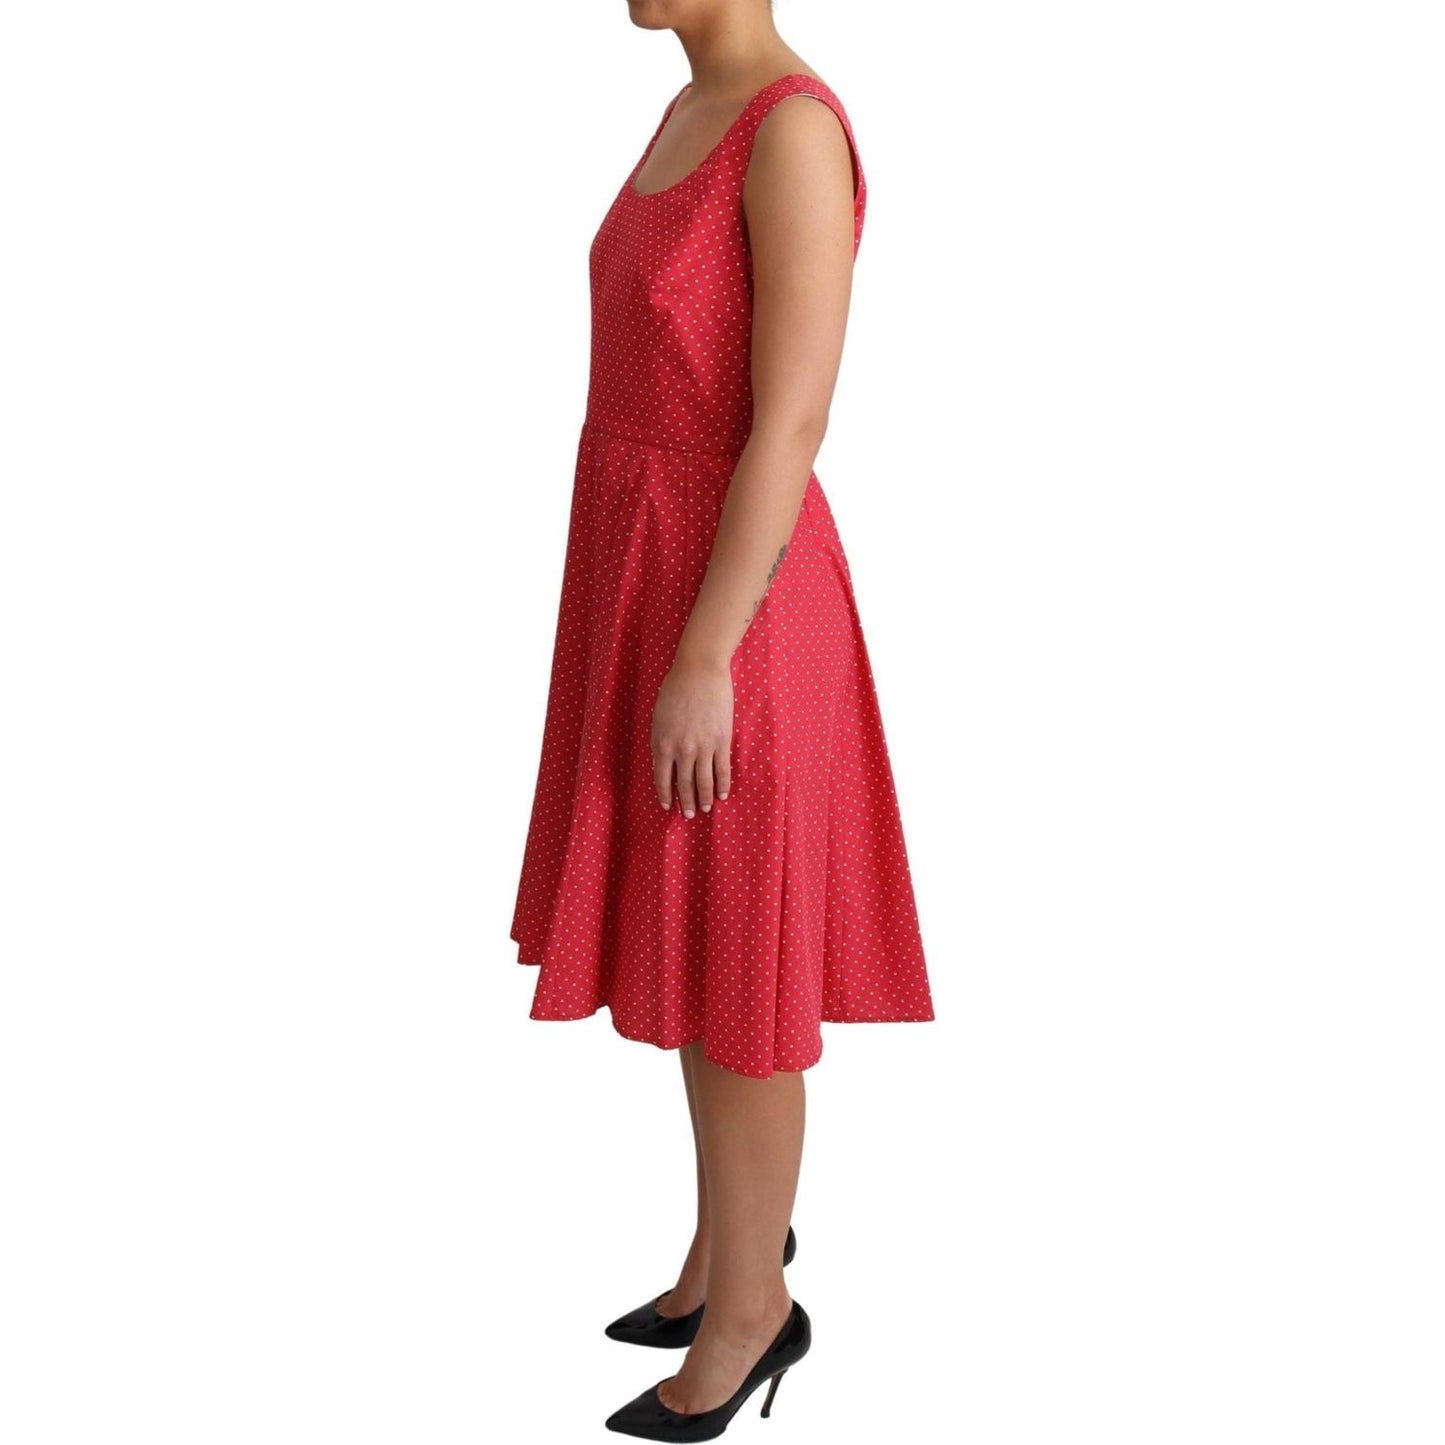 Dolce & Gabbana Polka-Dot Sleeveless A-Line Dress red-polka-dotted-cotton-a-line-dress